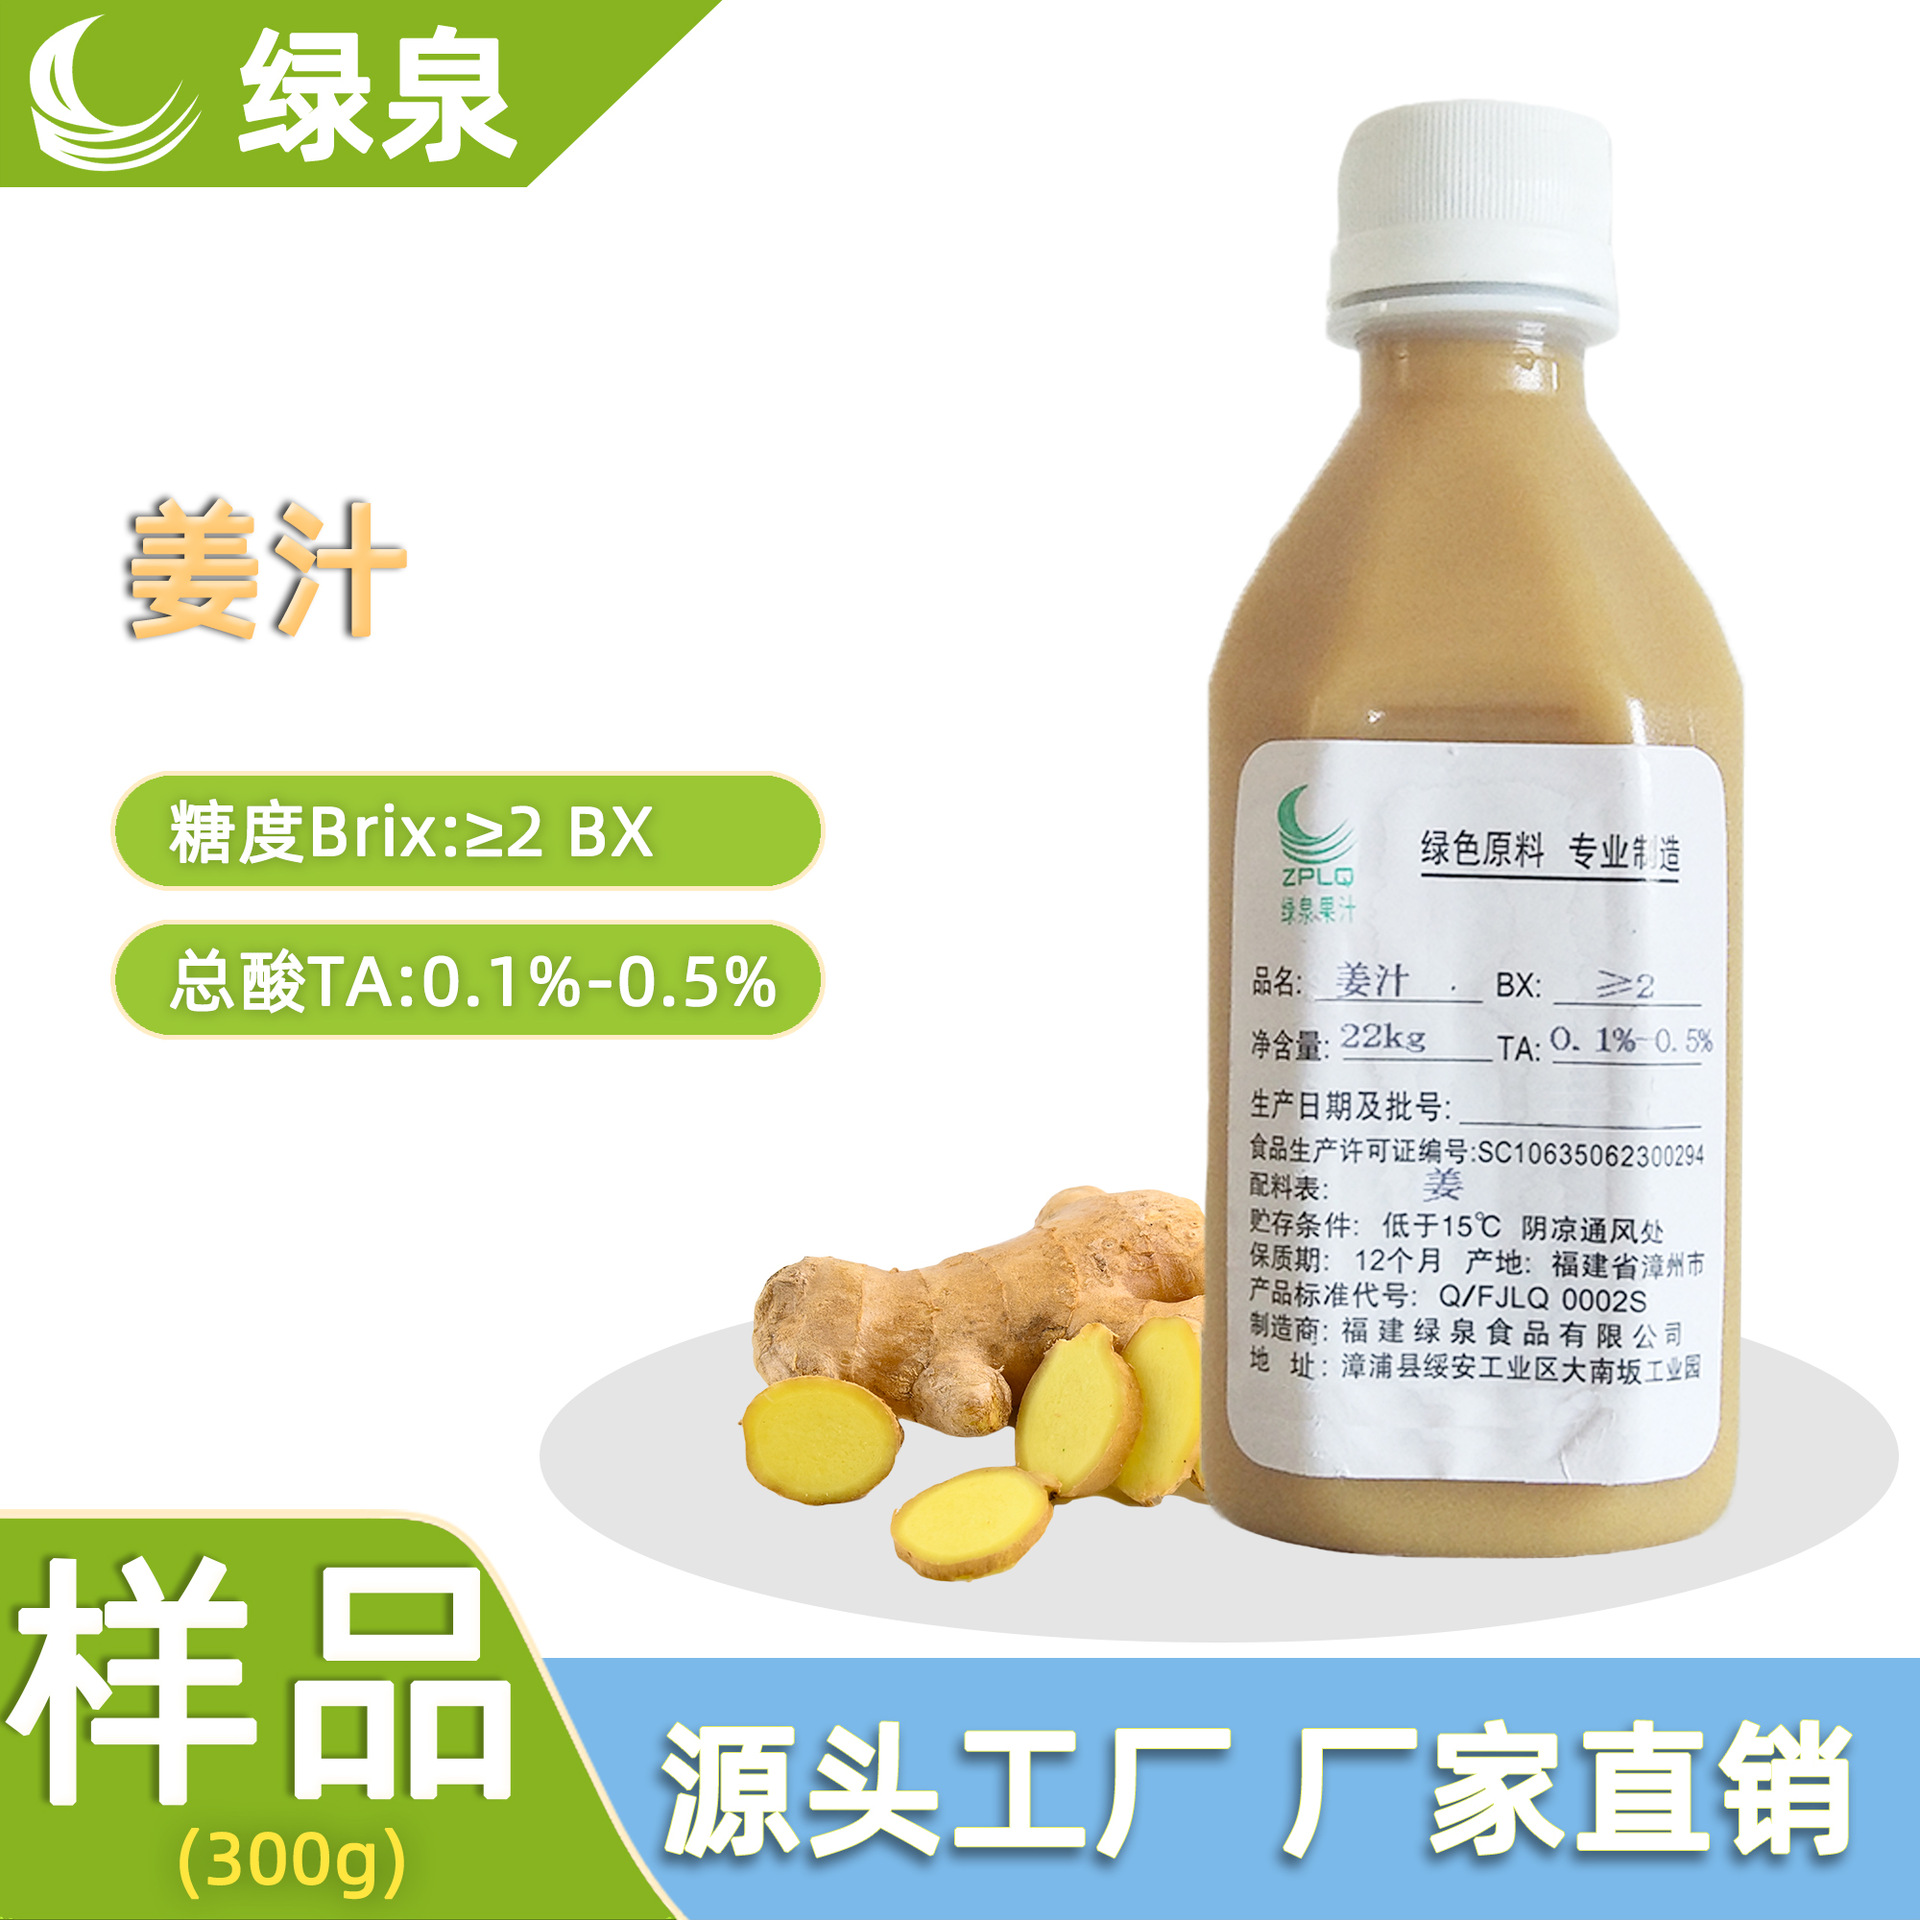 供应NFC姜汁2BX工业包装食品原料小黄姜浓缩果汁生产厂家直销批发